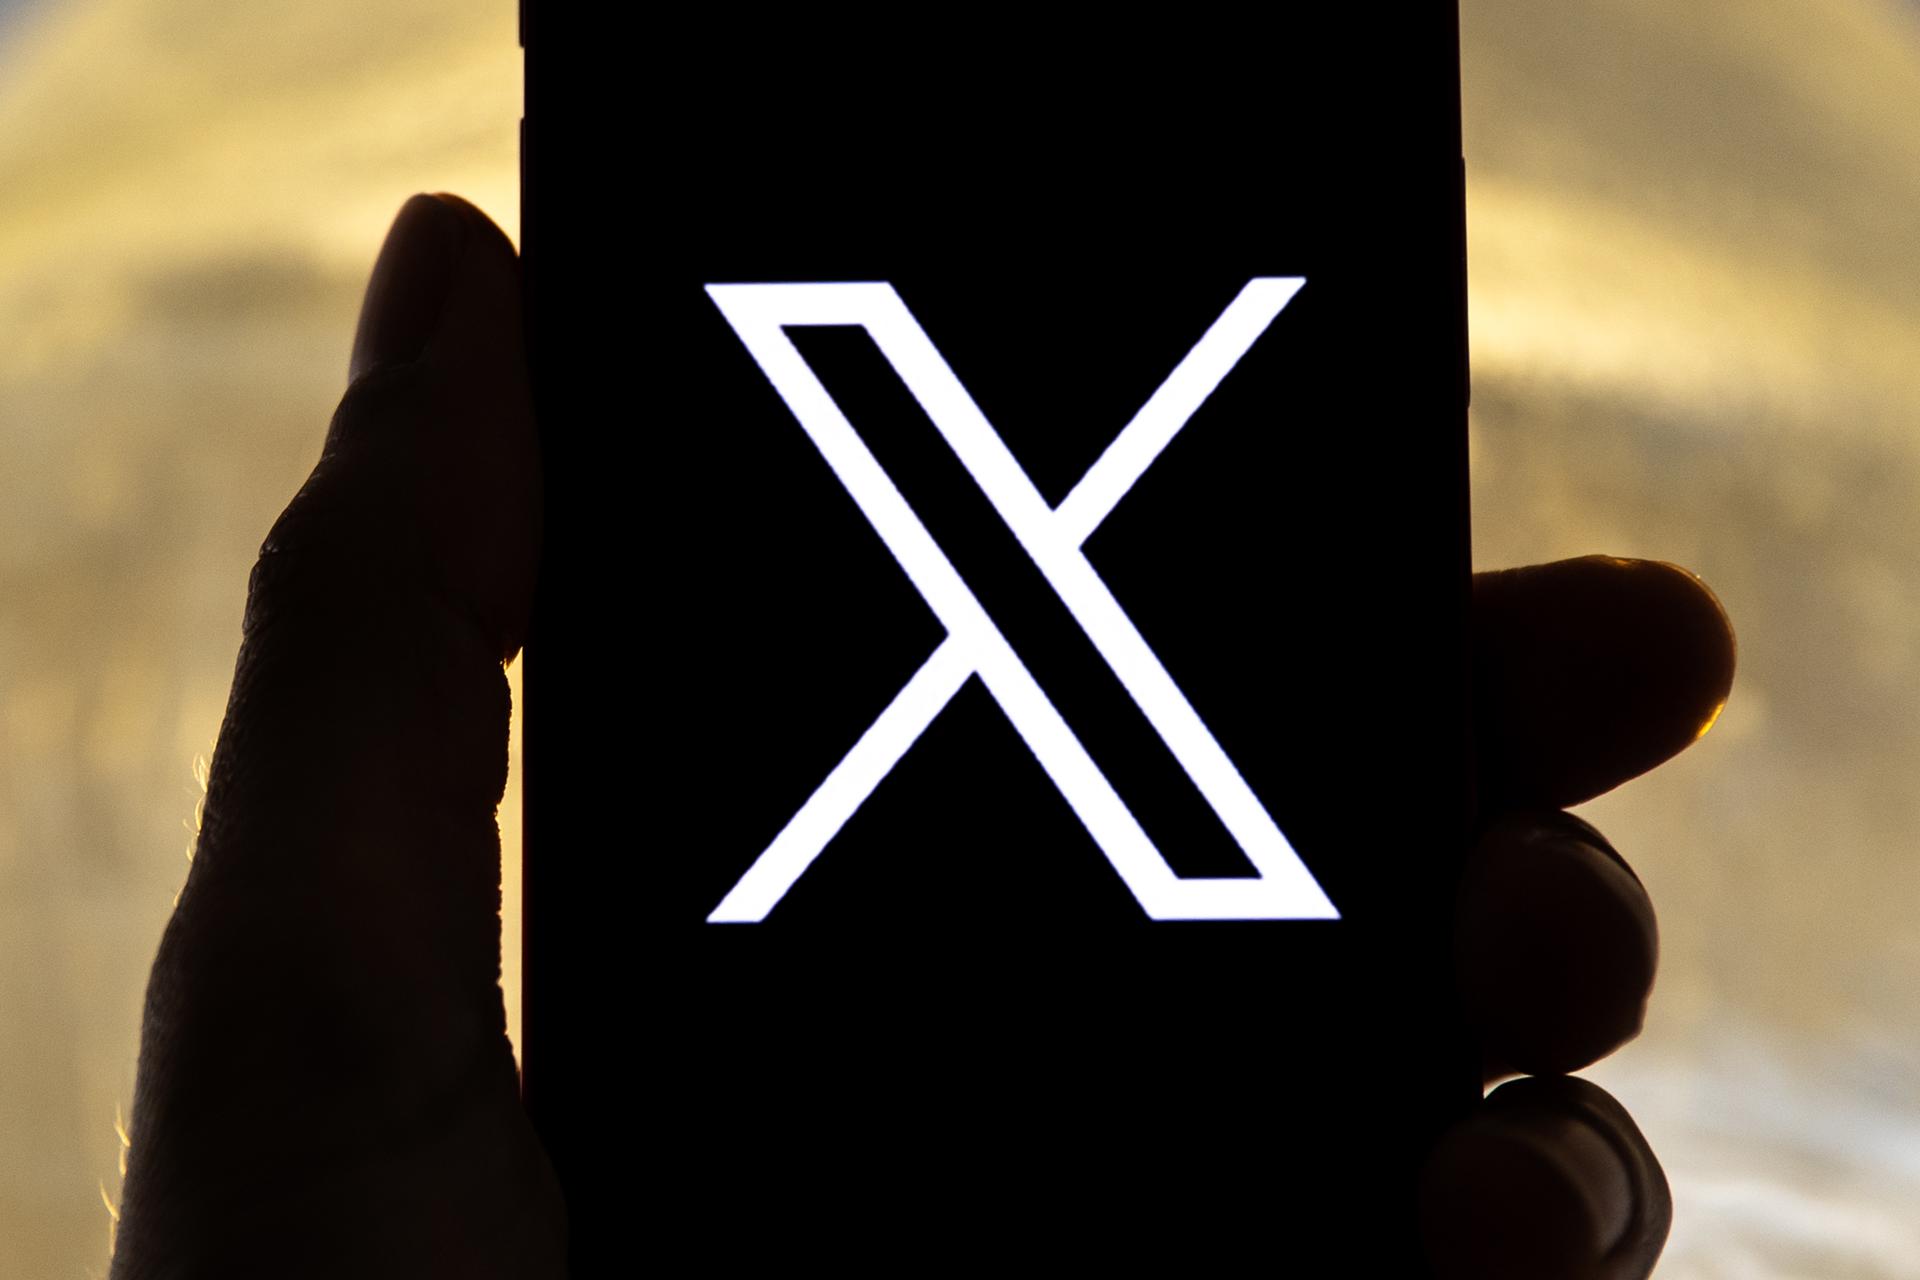 Vista del logo de la re social 'X', antes conocida como Twitter, en la pantalla de un teléfono móvil, en una fotografía de archivo. EFE/Etienne Laurent